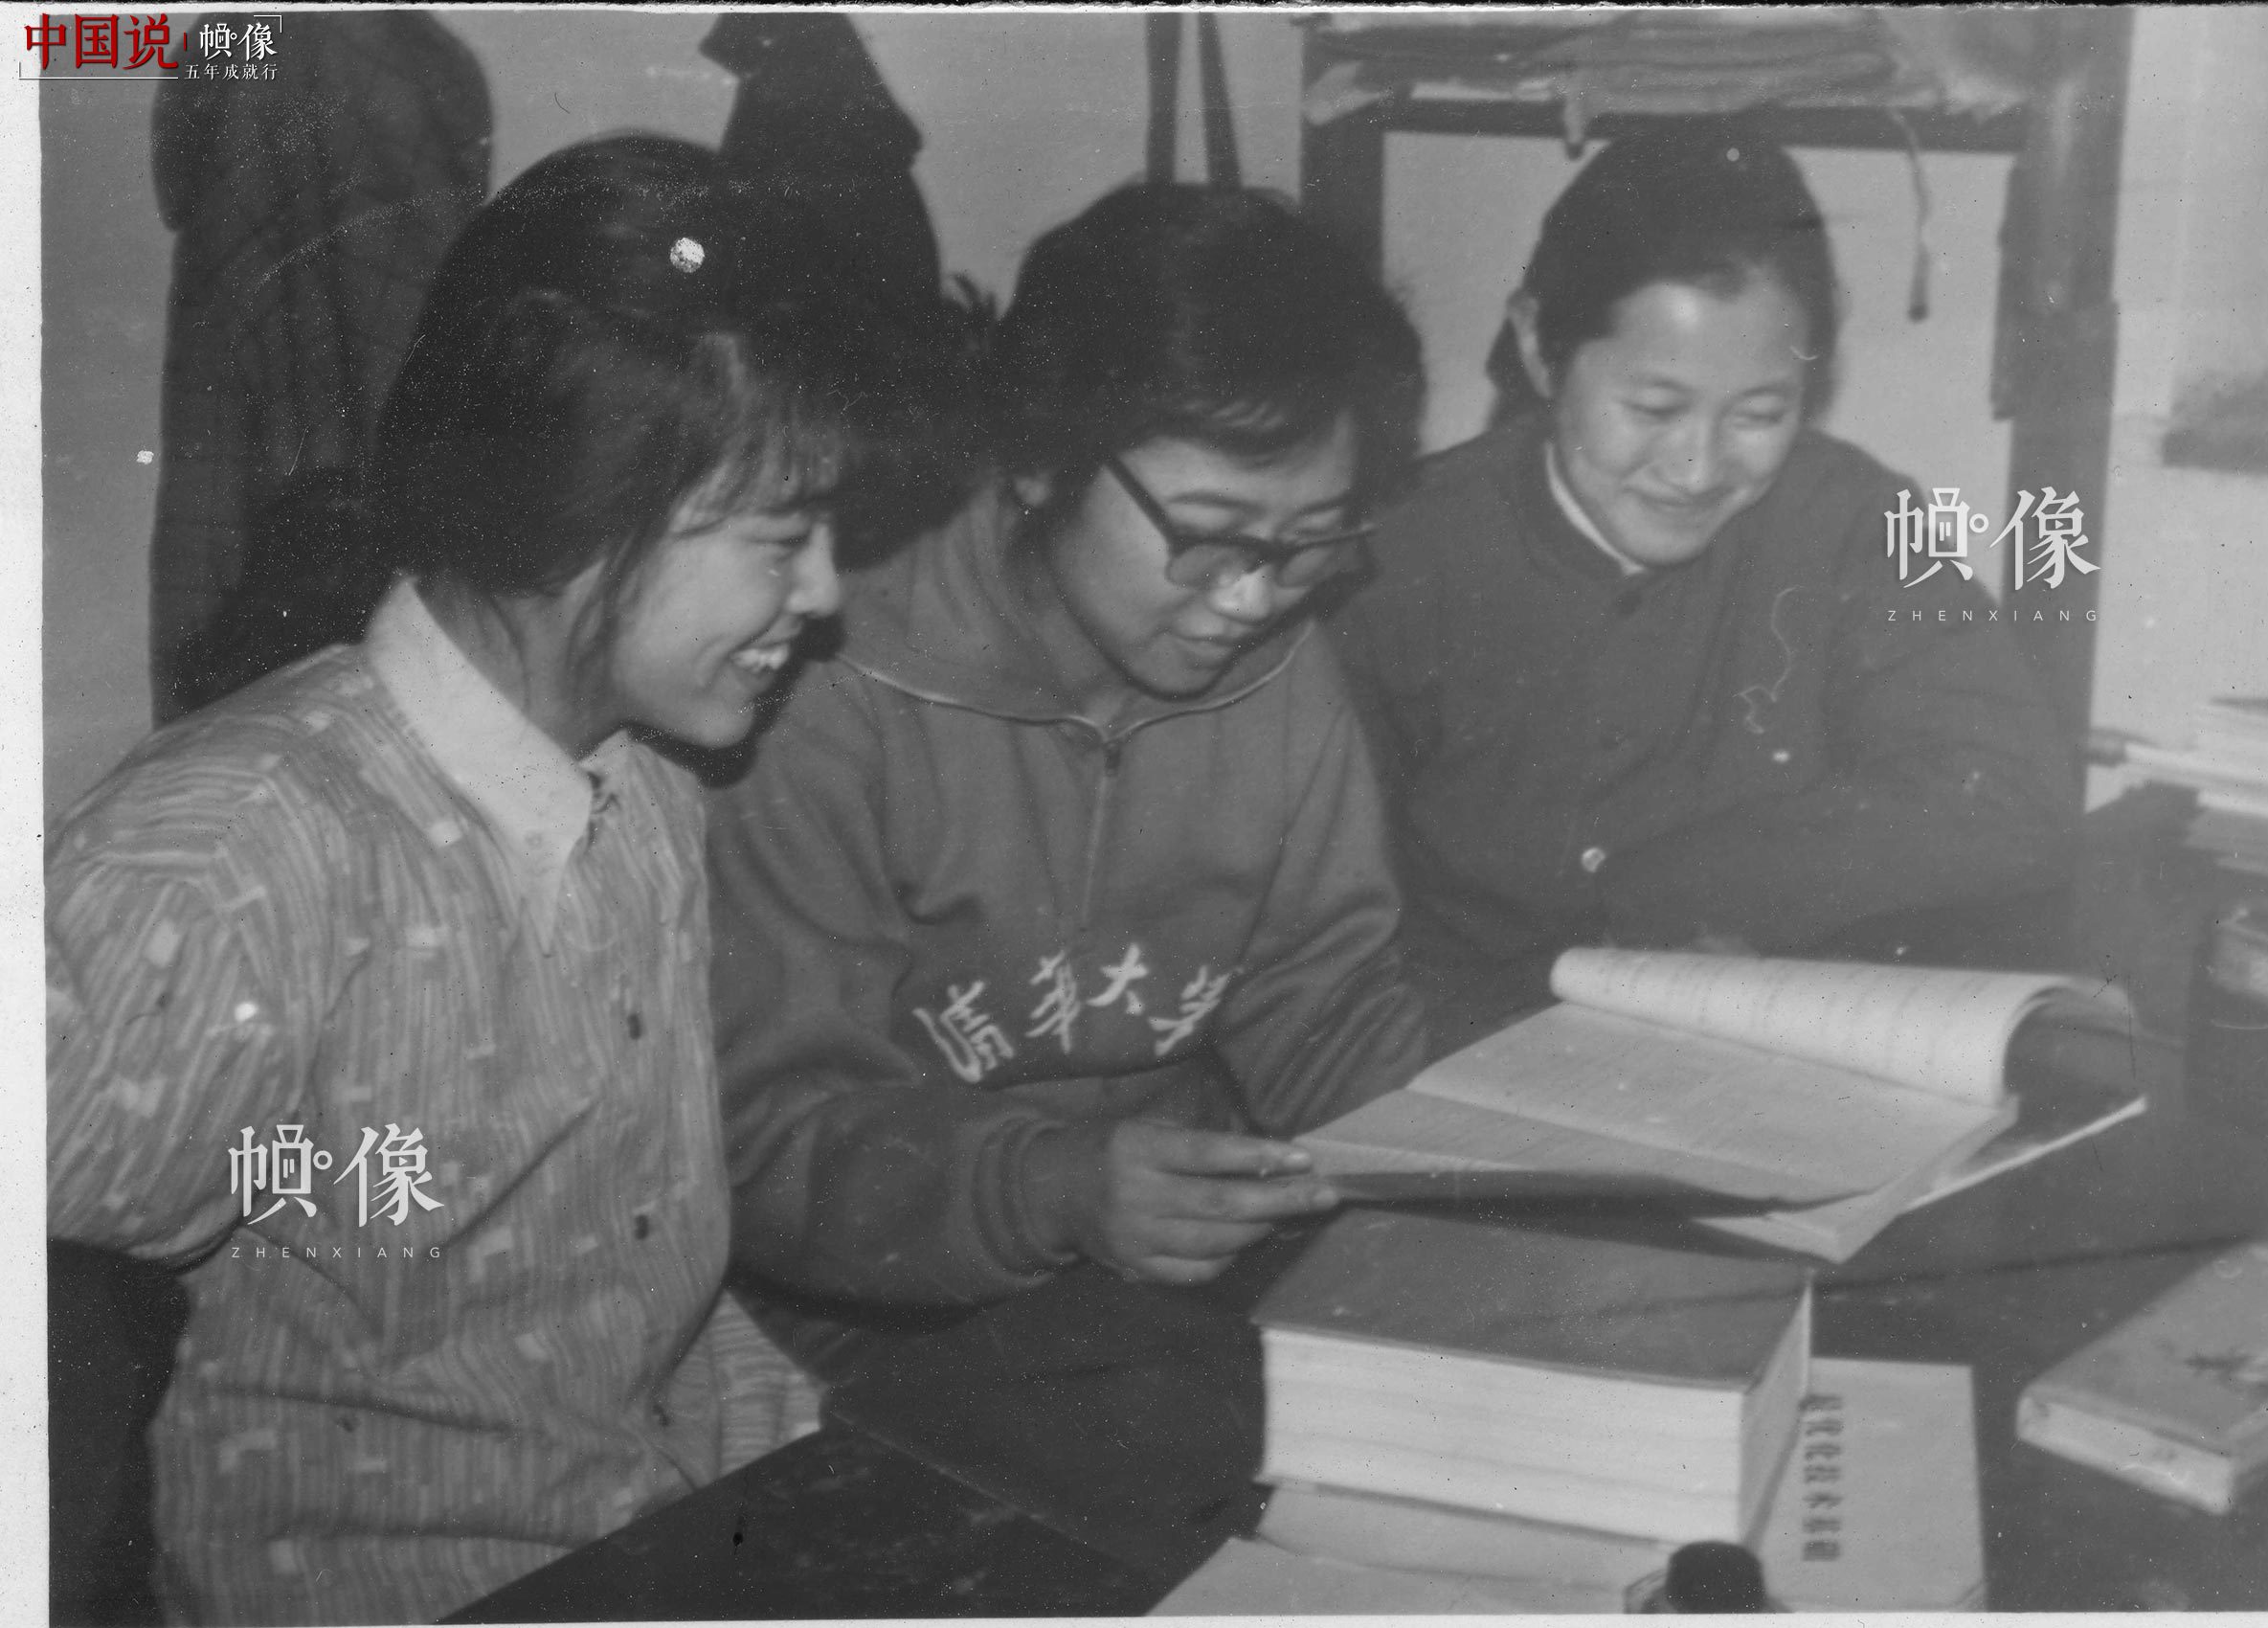 清华大学1977级自动化系学生韩景阳与室友在宿舍内学习。